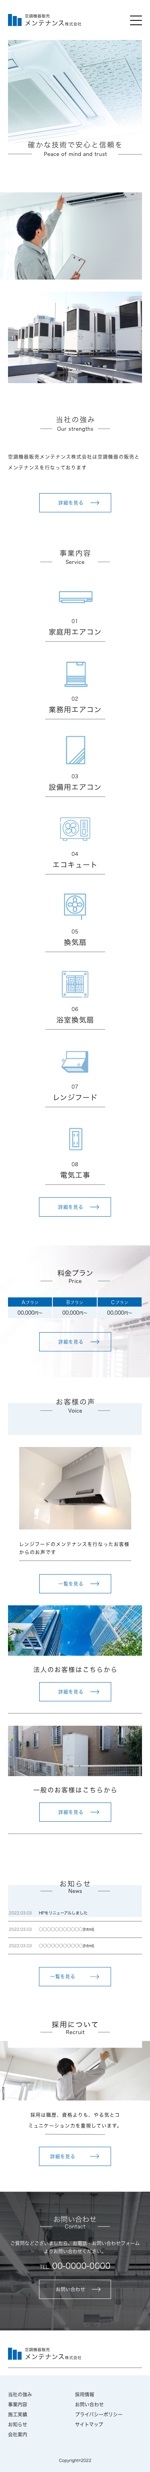 WEB制作職人 (kenshiyamamoto)さんのWEBサイトのTOPデザイン(PC・スマホ両方)※ワイヤーフレームあり、当選者に下層ページ依頼しますへの提案